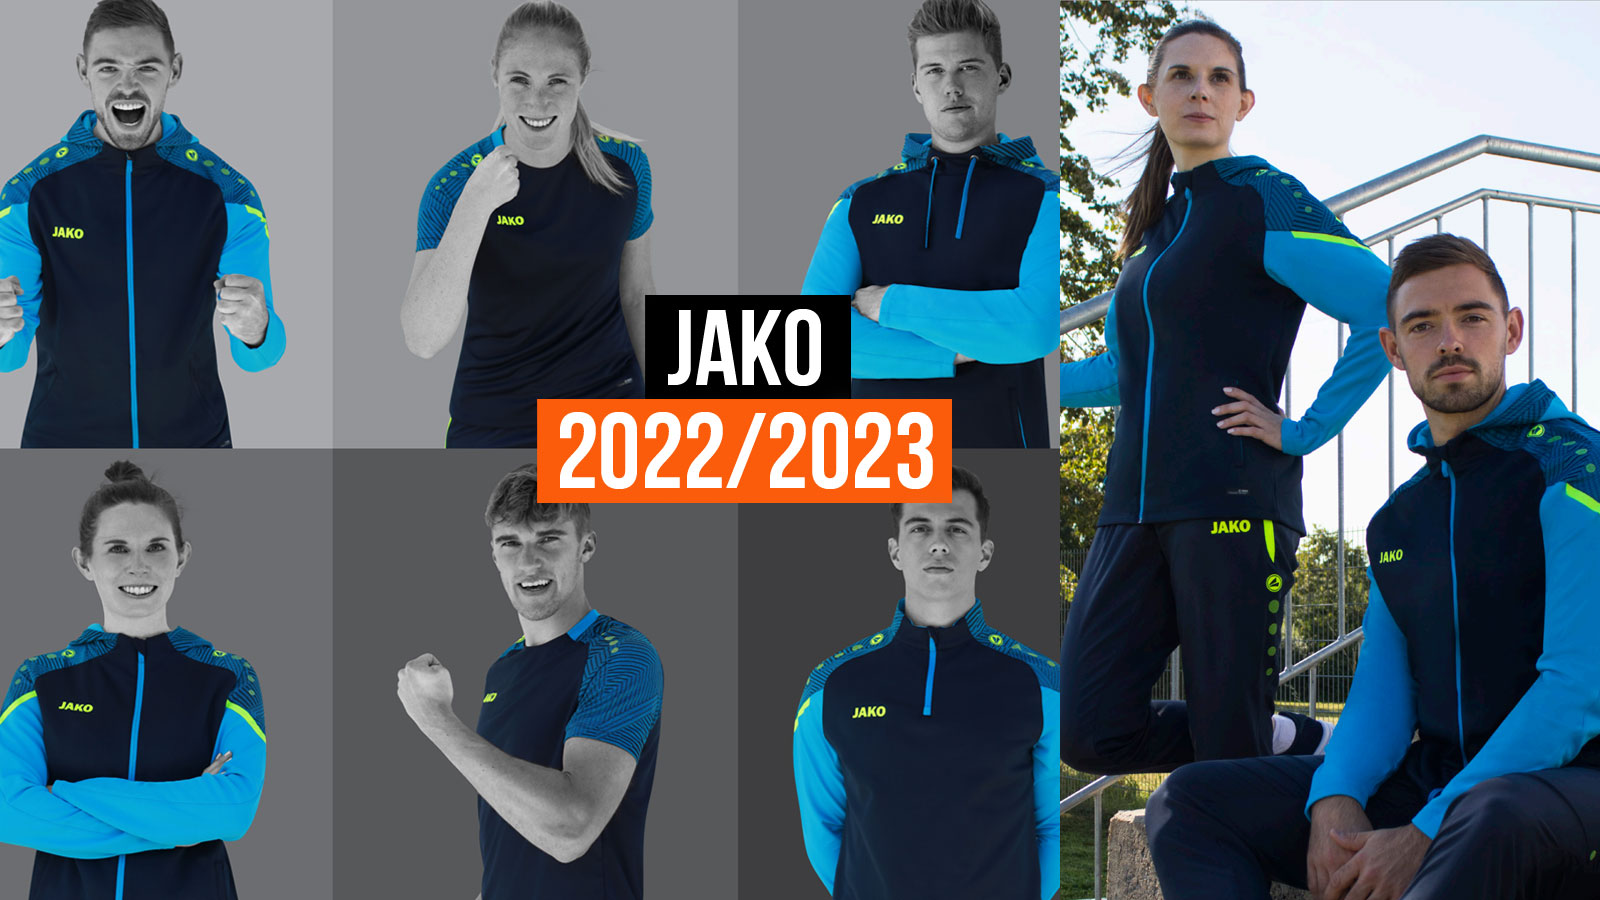 die Jako 2022/2023 Teamsport Neuheiten für Vereine und Mannschaften